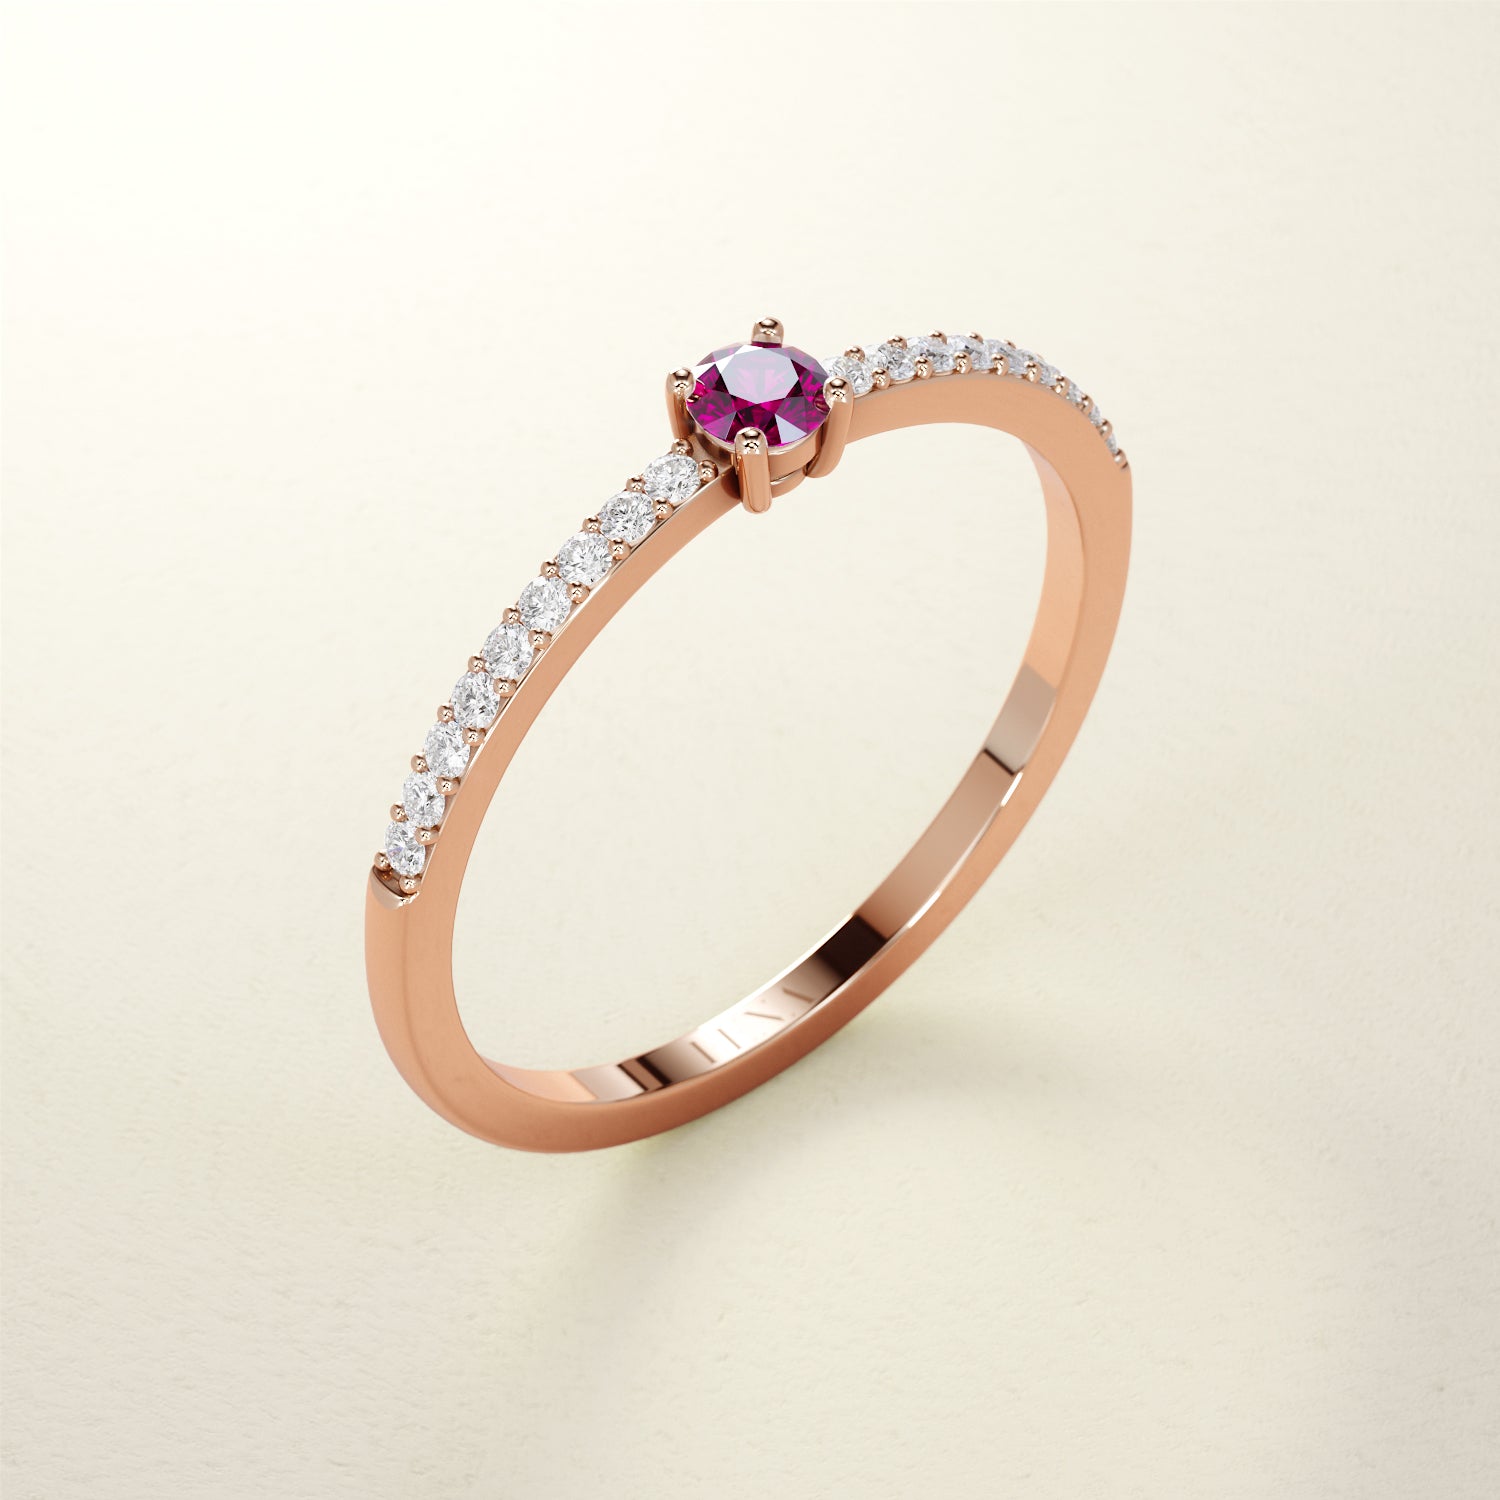 Birthstone Ring Jänner in Roségold mit rotem Granat und Diamanten. Von FENA daily Jewellery.